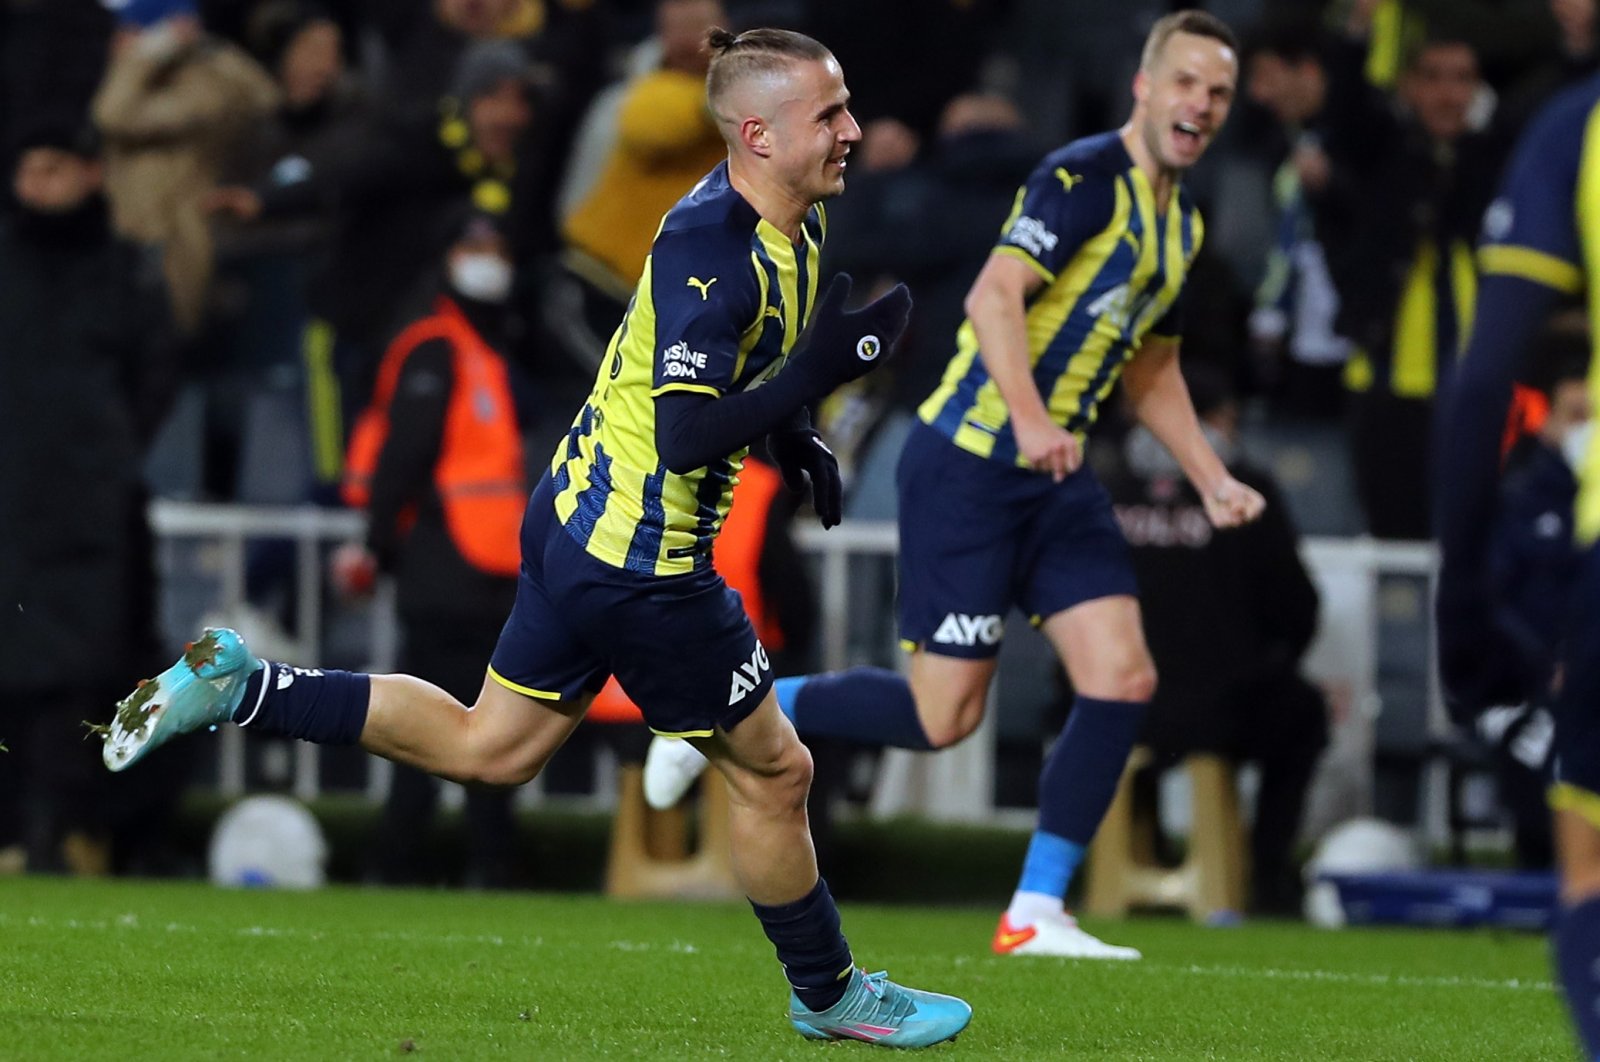 Fenerbahçe bangkit untuk mengalahkan Konyaspor yang berada di posisi ke-2 di Süper Lig